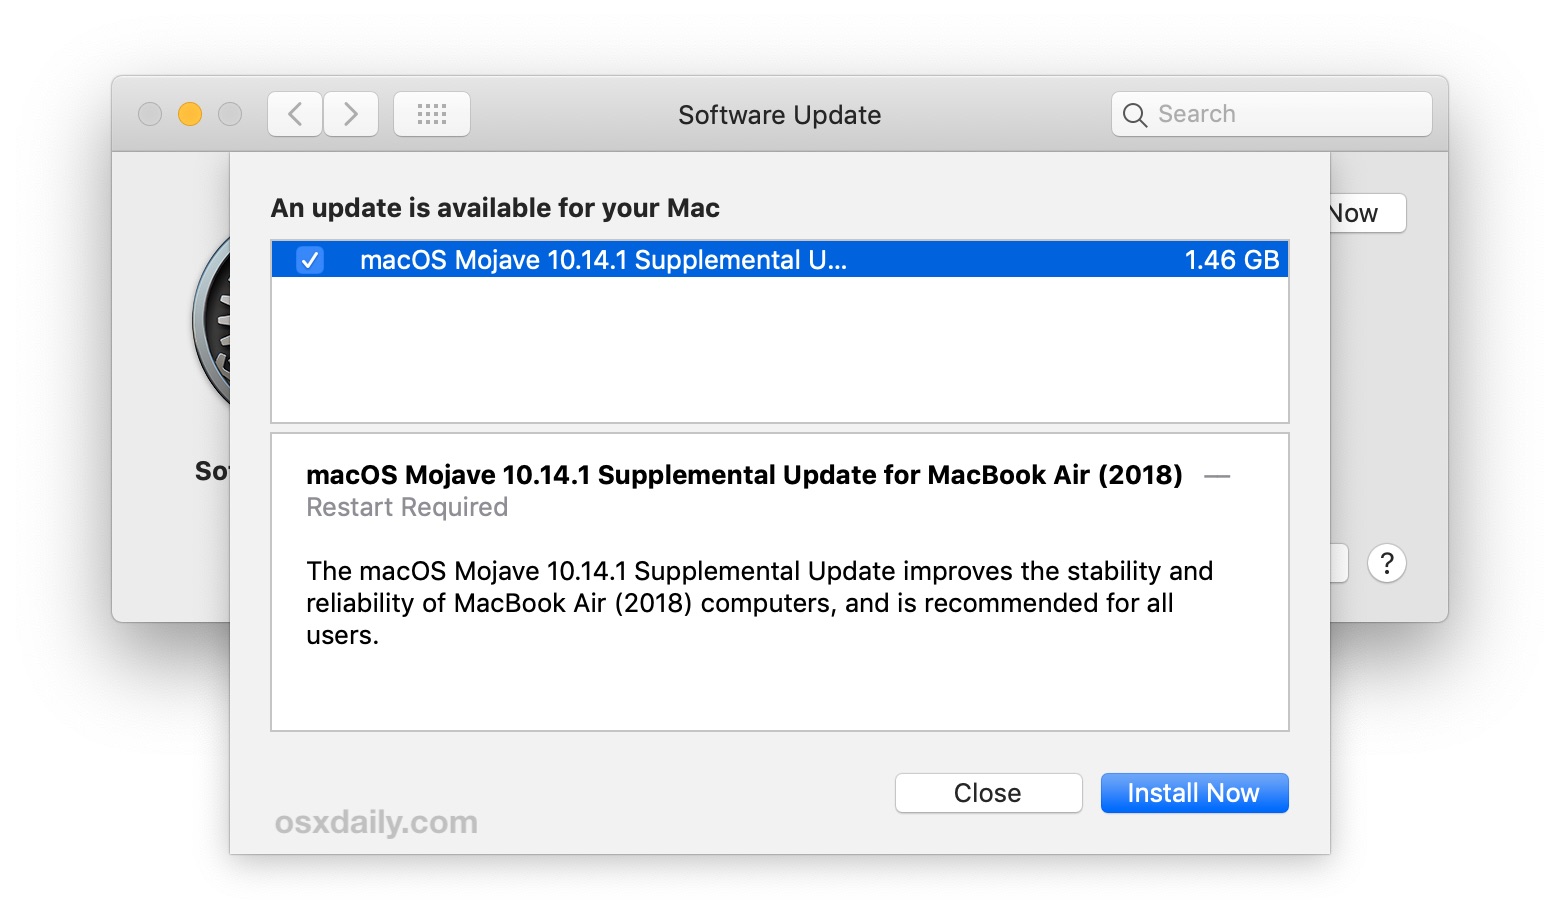 macOS Mojave 10.14.1 Supplemental Update for MacBook Air (2018)